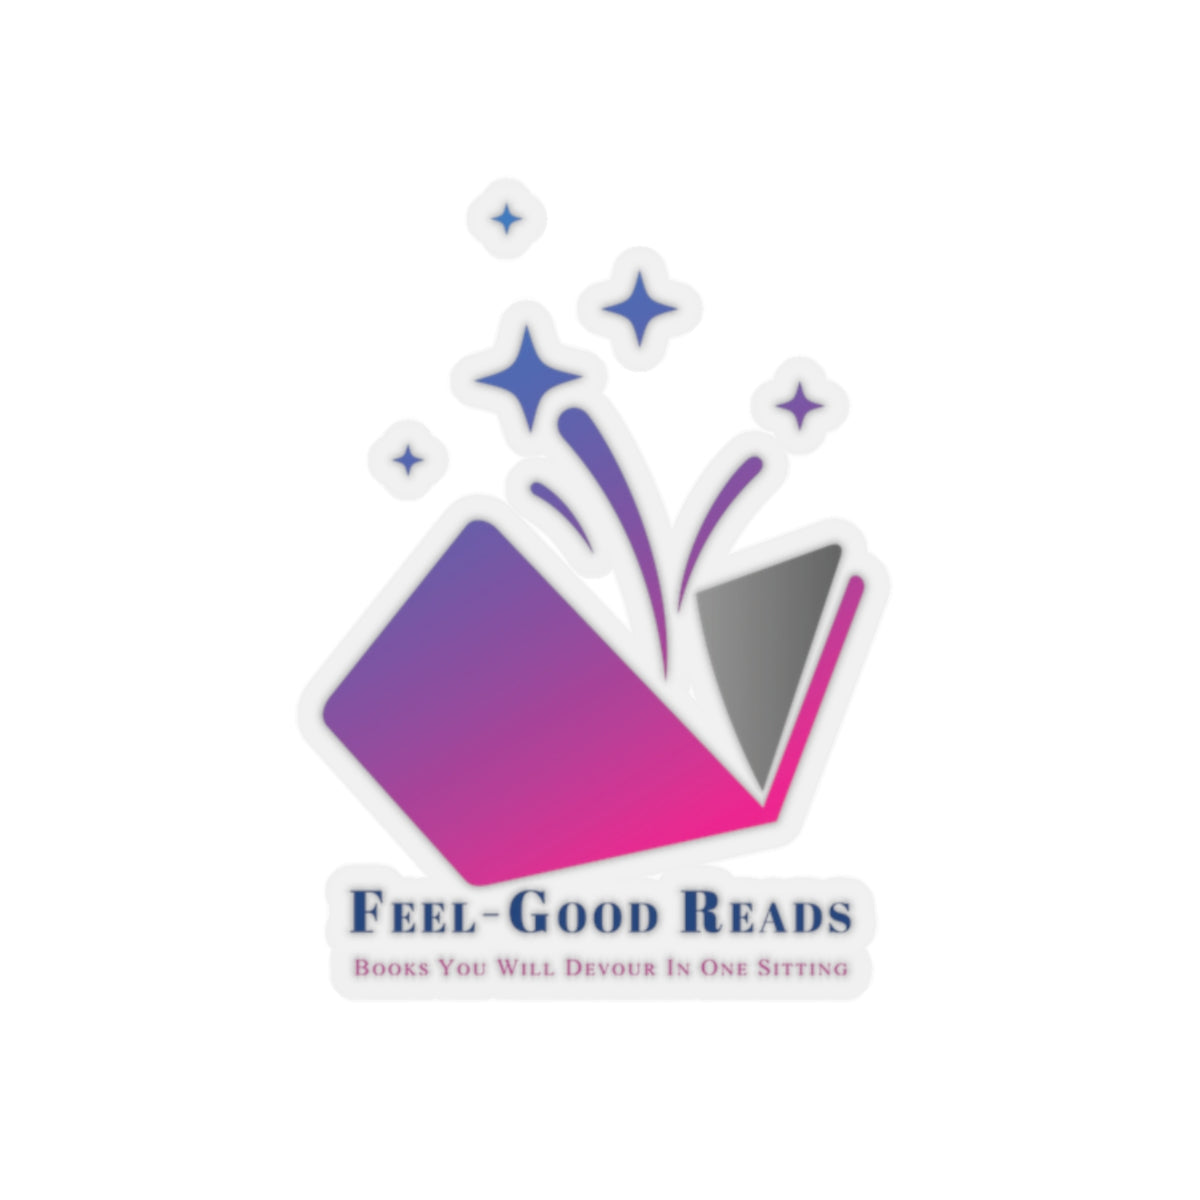 Feel-Good Reads Kiss-Cut Stickers